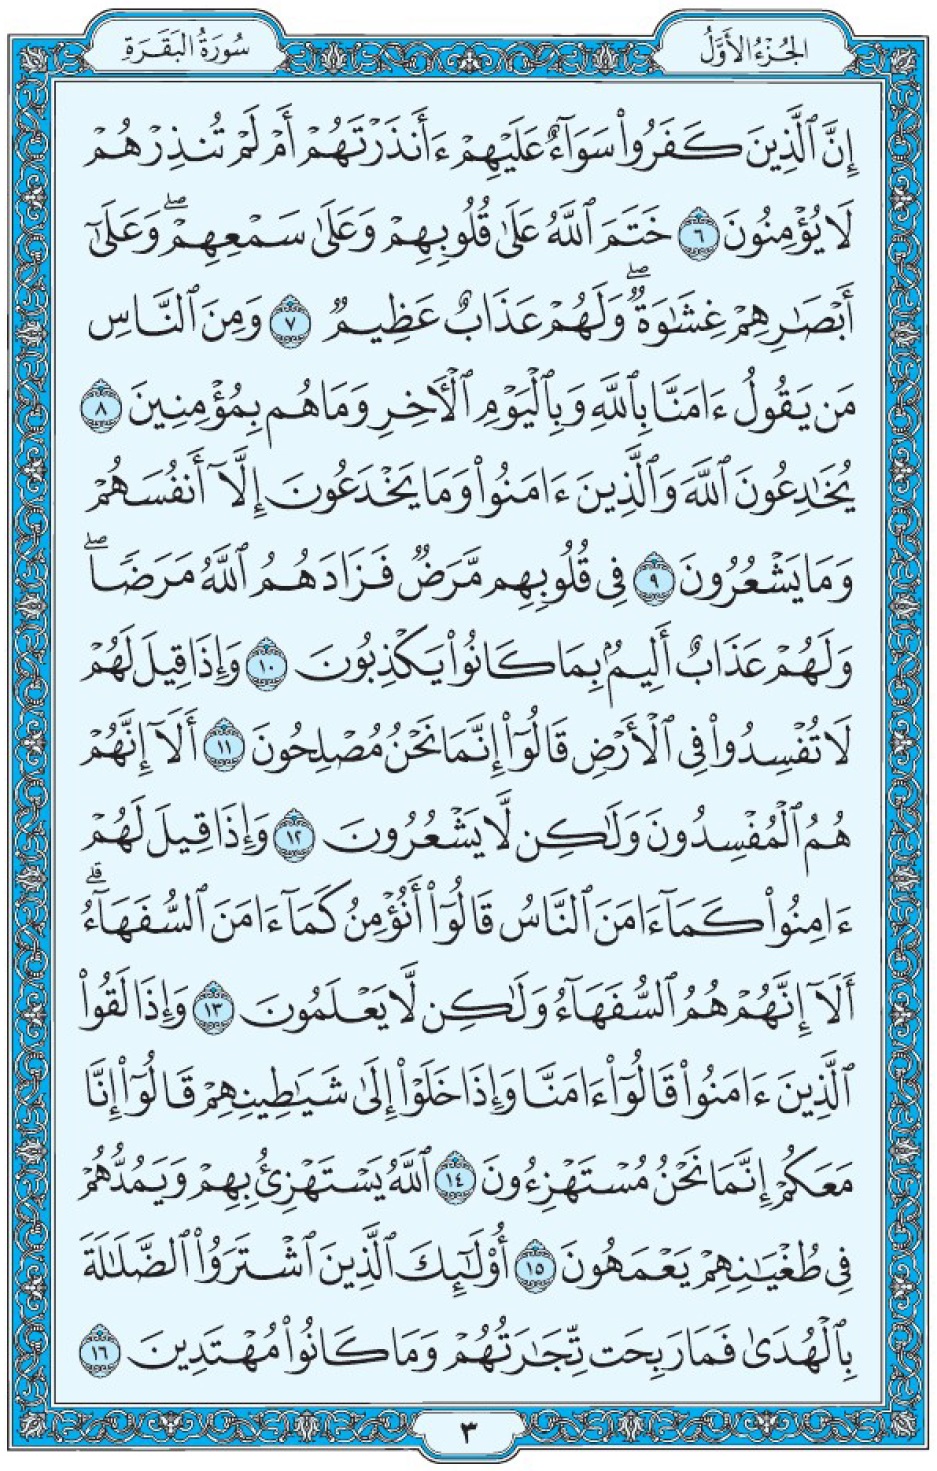 Коран Мединский мусхаф страница 3, Аль-Бакара, аят 6-16